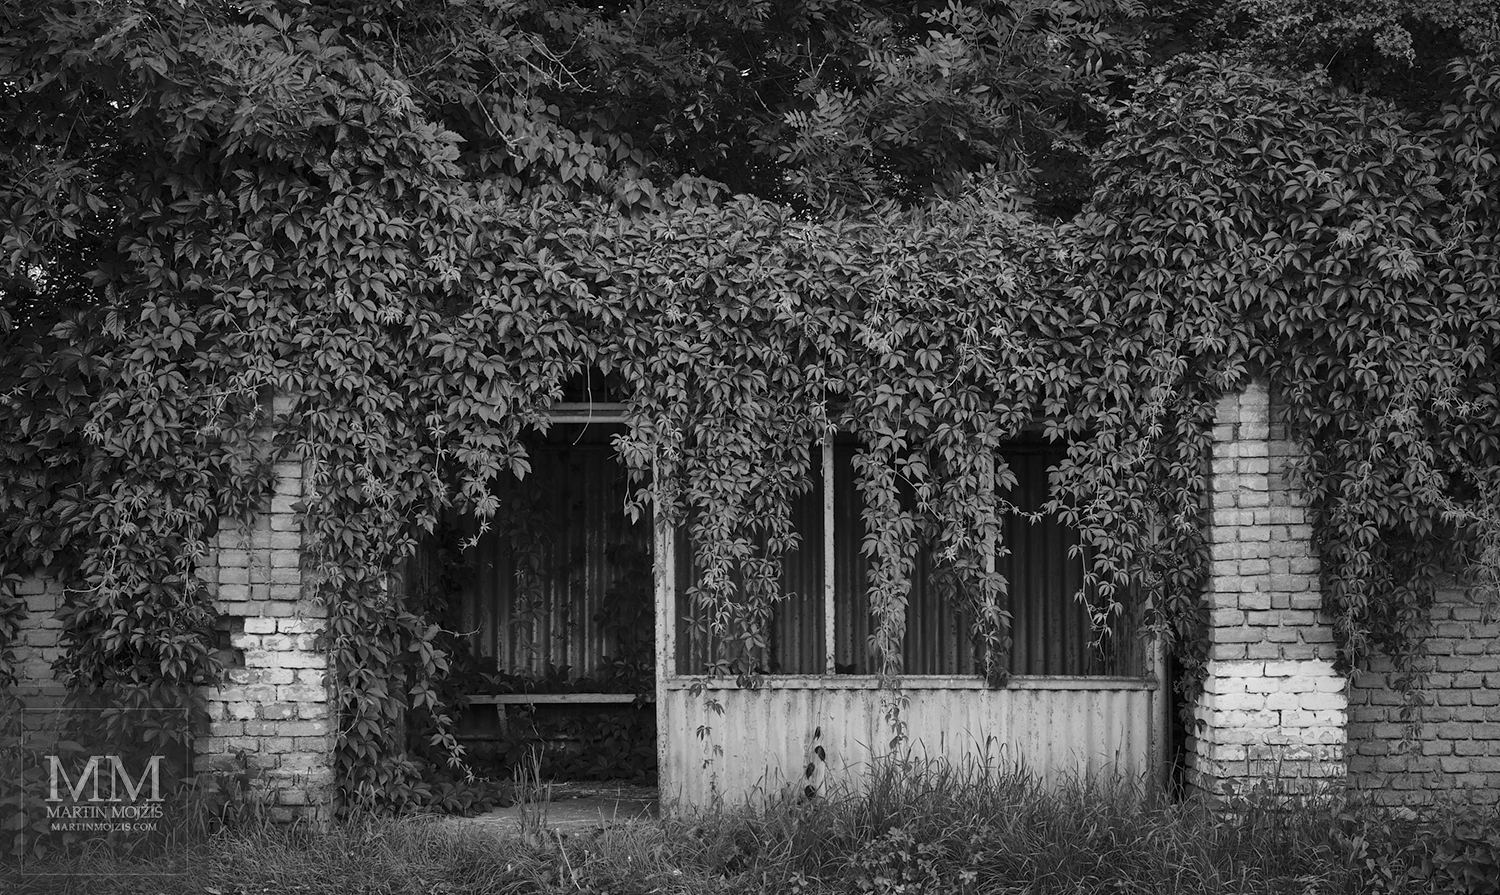 Zastávka autobusu porostlá popínavými rostlinami. Umělecká černobílá fotografie s názvem V ŘÍŠI ROSTLIN. Fotograf Martin Mojžíš.